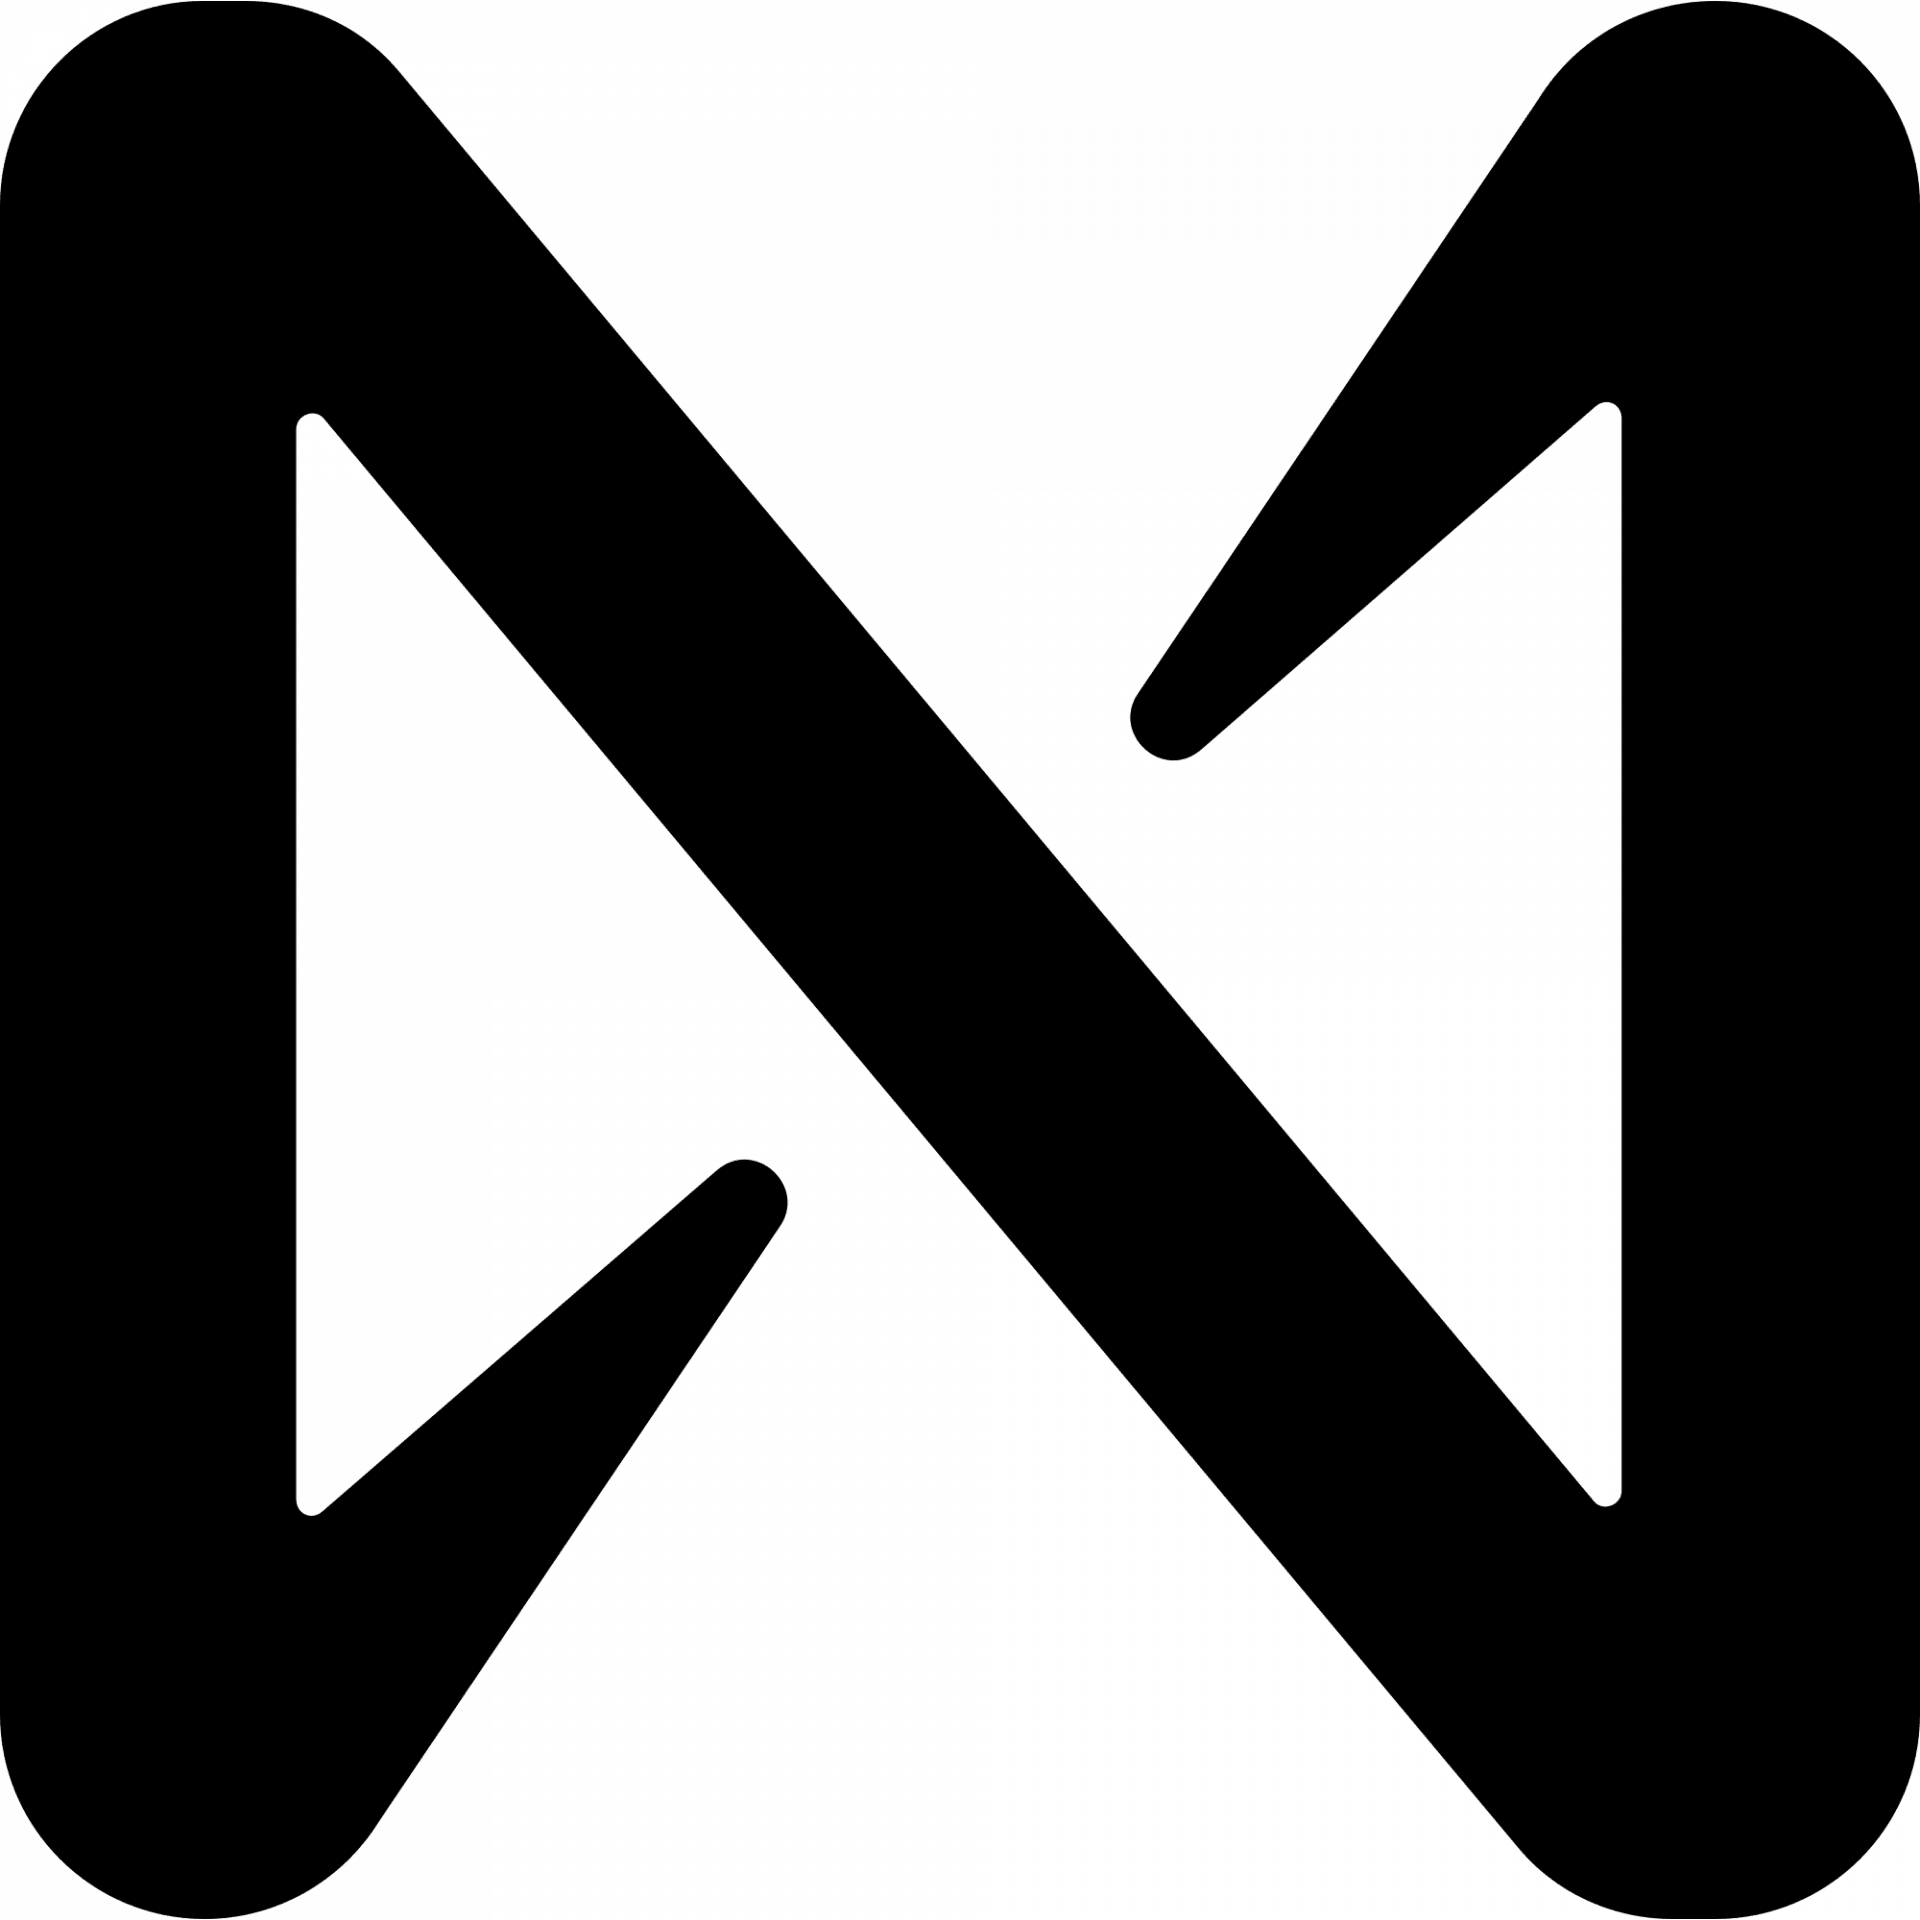 Near Protocol logo